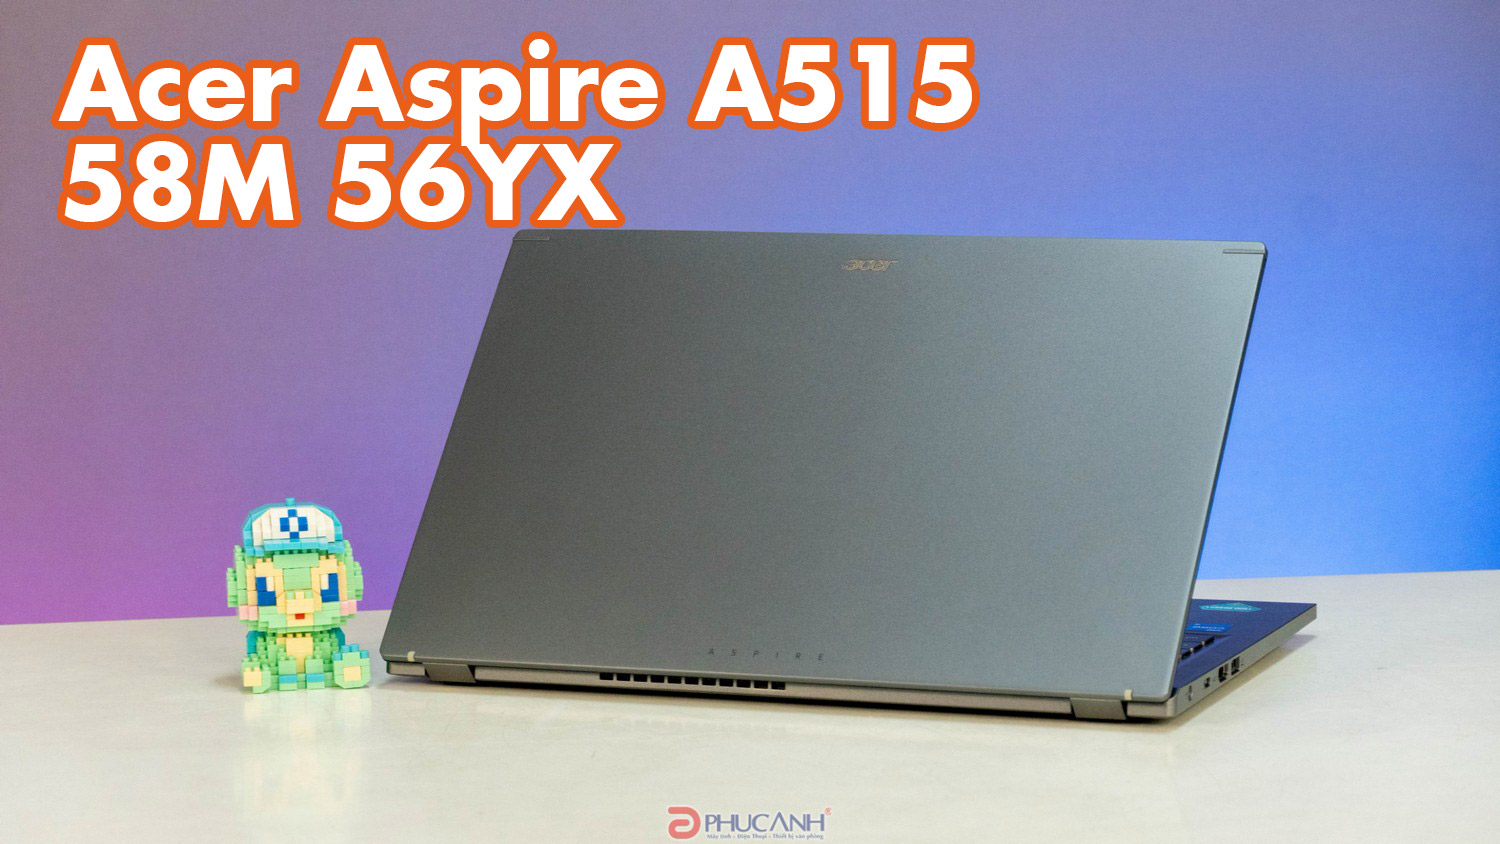 Đánh giá Acer Aspire A515 58M 56YX - giá thành tốt, cấu hình khủng với CPU Intel dòng H và RAM dung lượng lớn